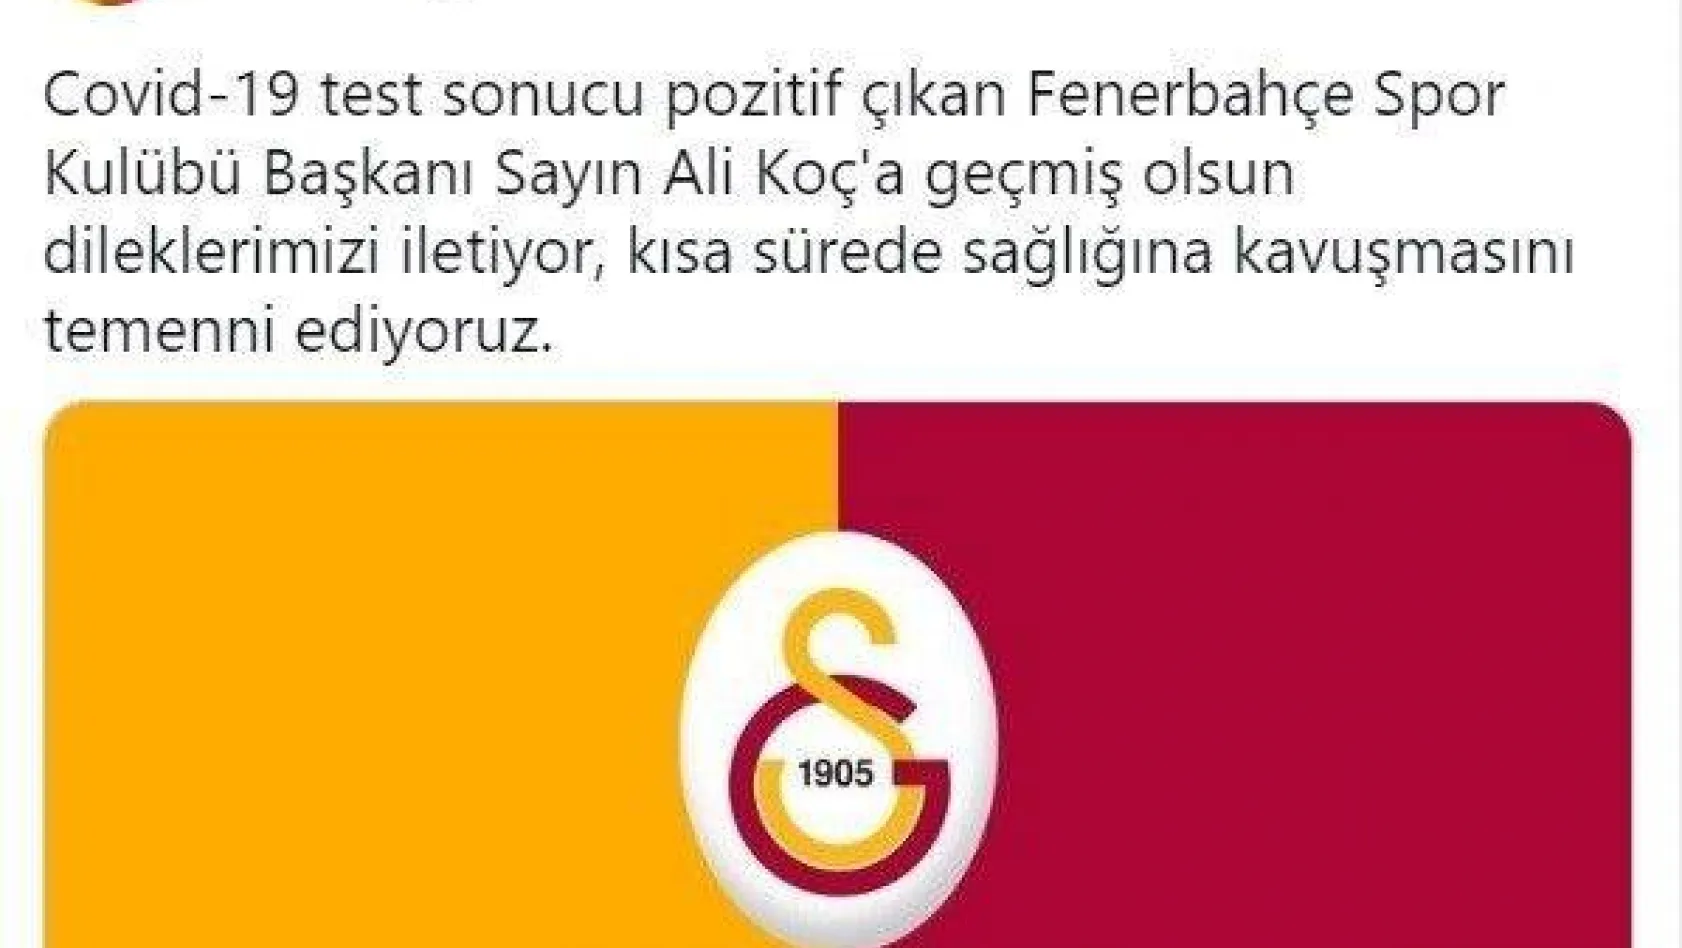 Galatasaray'dan Ali Koç'a geçmiş olsun mesajı